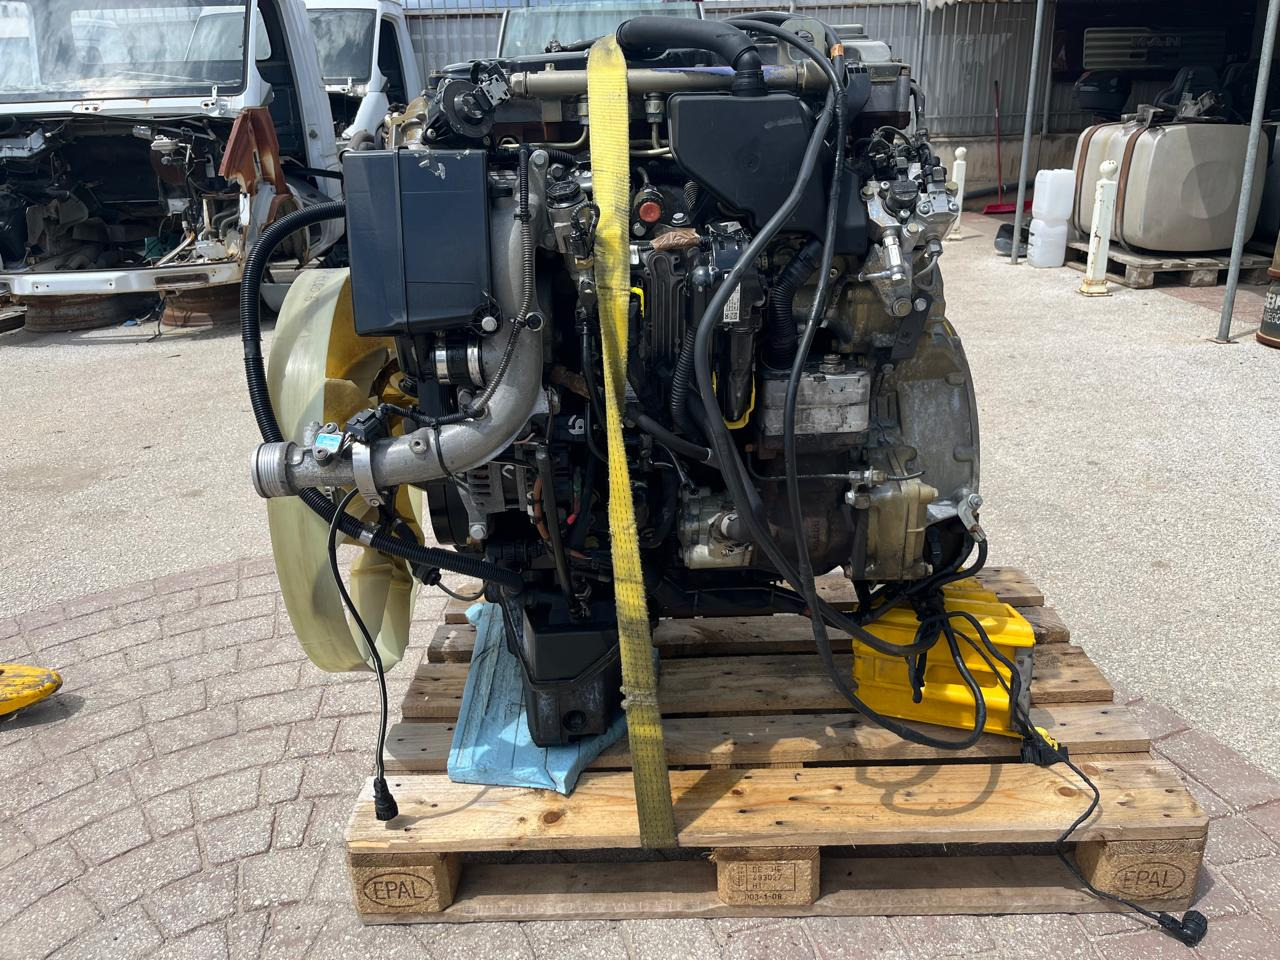 Двигатель и запчасти для Грузовиков ENGINE ATEGO OM934LA EURO 6--GEARBOX G71-6: фото 2